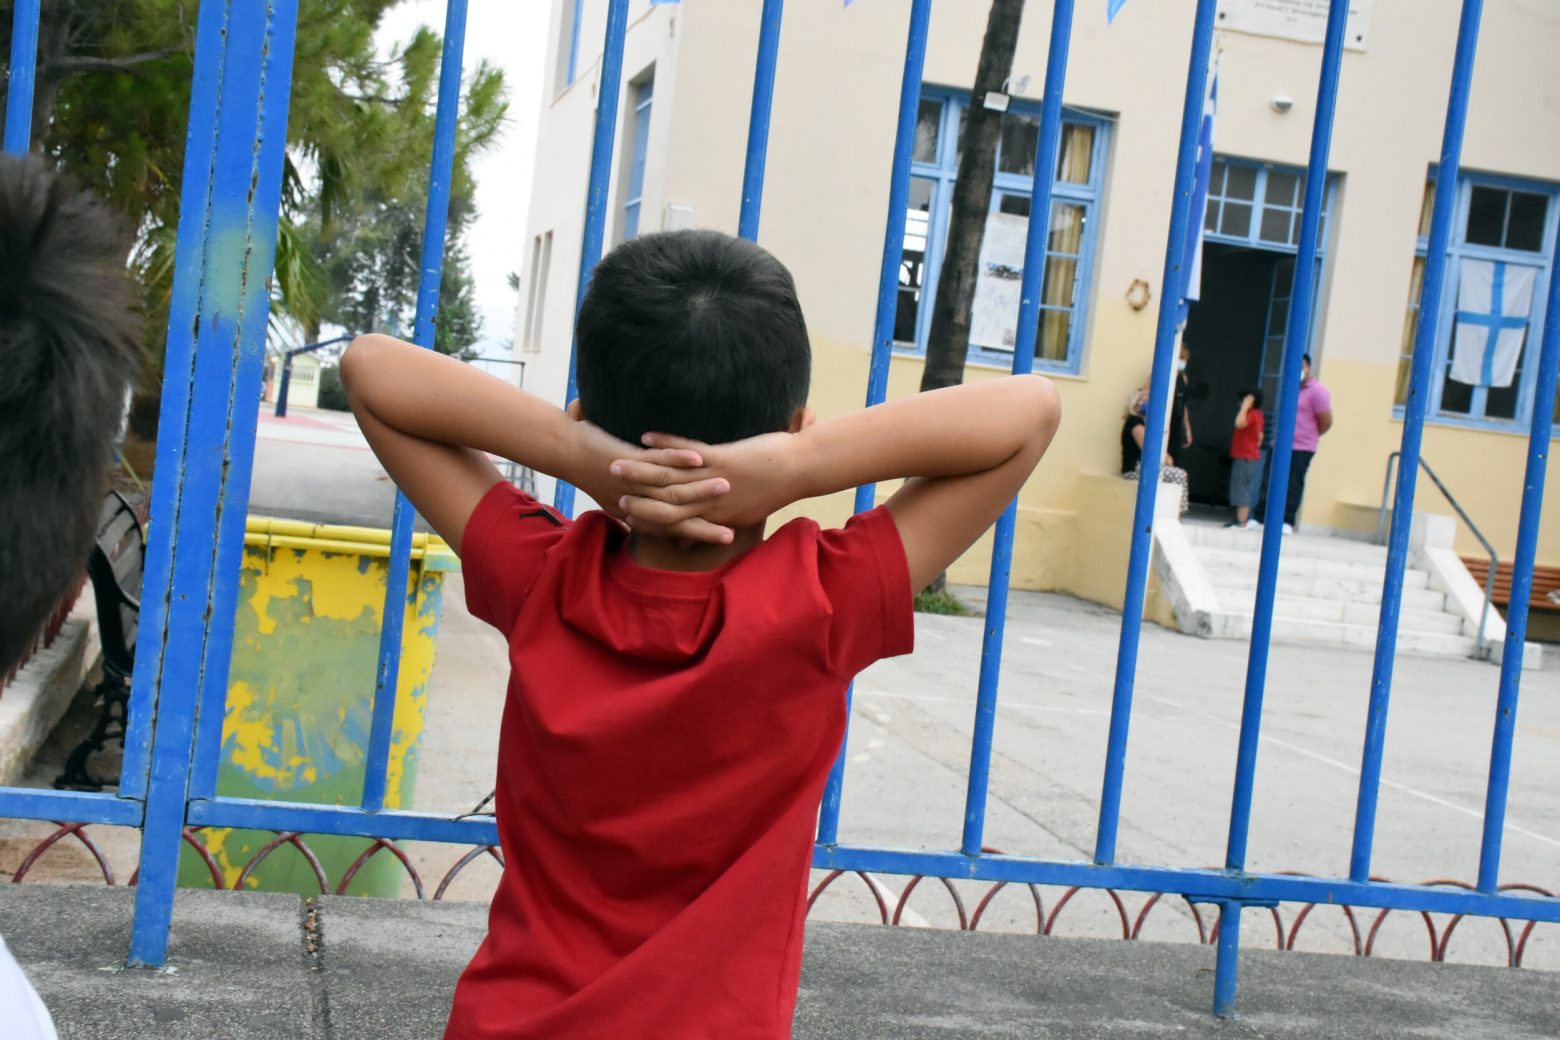 Ηράκλειο - Παρέμβαση εισαγγελέα για 23 αρνητές γονείς - Χωρίς σχολείο φέτος τα παιδιά τους